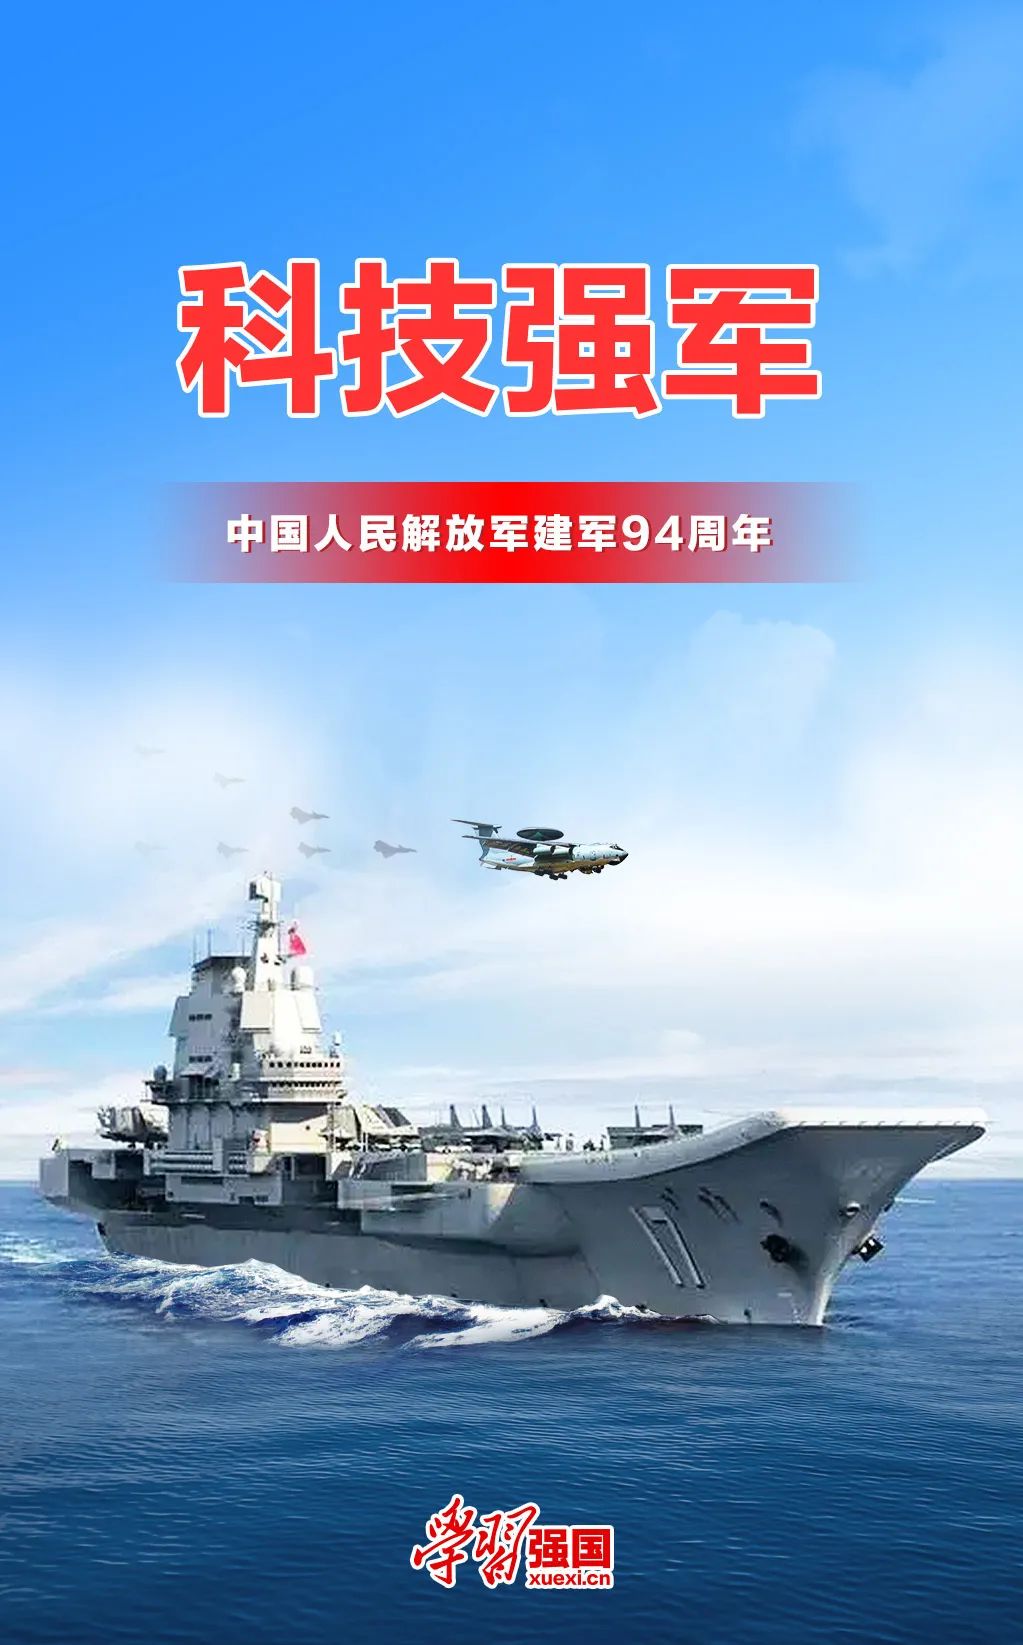 【海报】庆祝中国人民解放军建军94周年